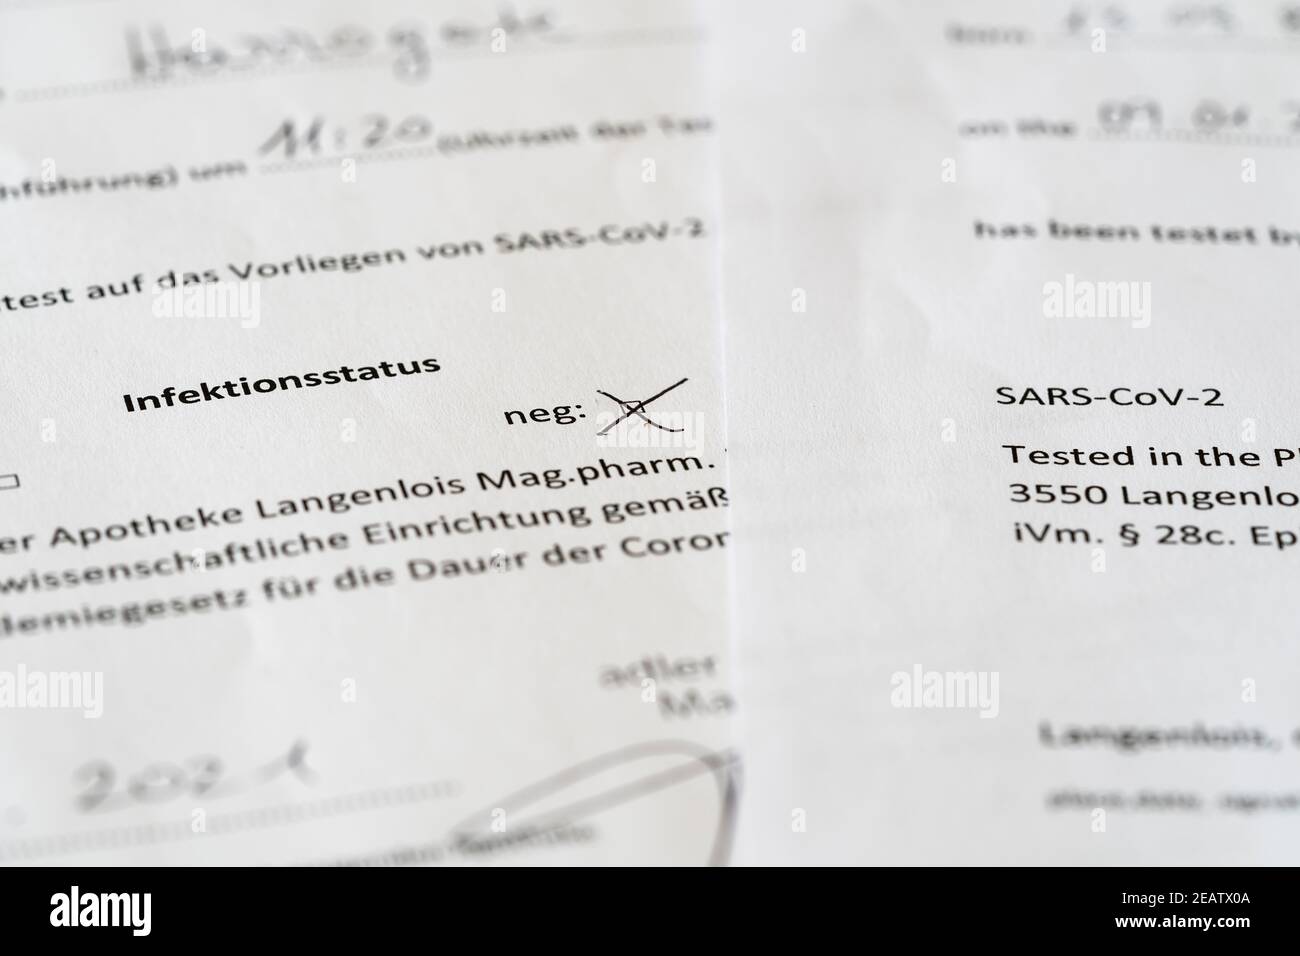 Se requiere una prueba Covid-19 negativa para entrar en el Reino Unido durante el bloqueo - aquí hay dos certificados de prueba negativos De Austria en inglés y alemán Foto de stock